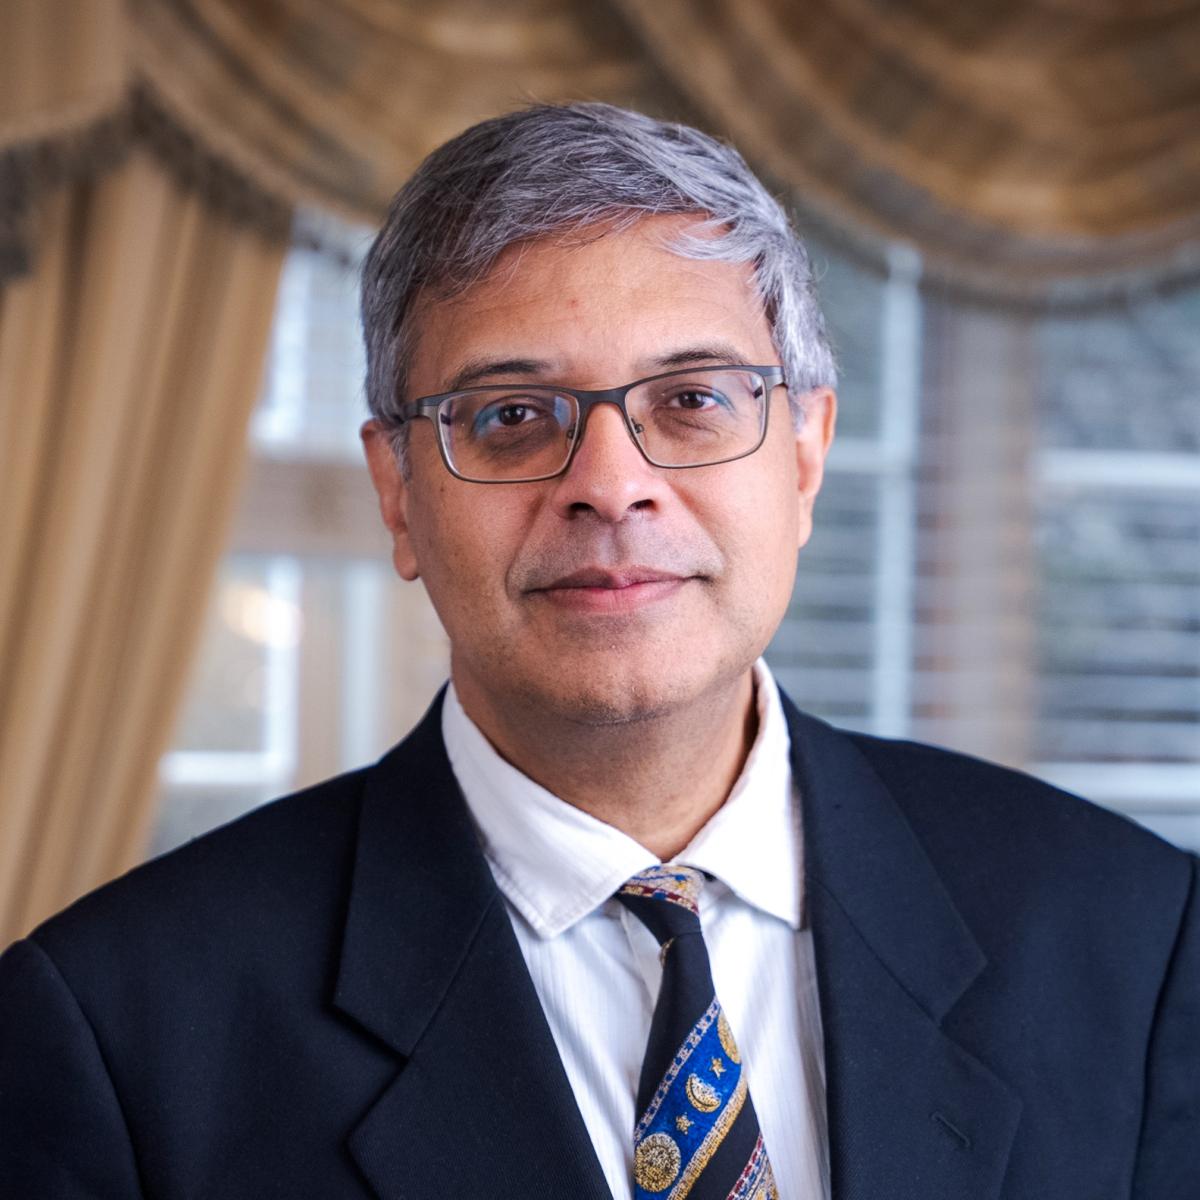 Dr. Jay Bhattacharya, professore di politica sanitaria presso la School of Medicine della Stanford University. (Tal Atzmon/The Epoch Times)